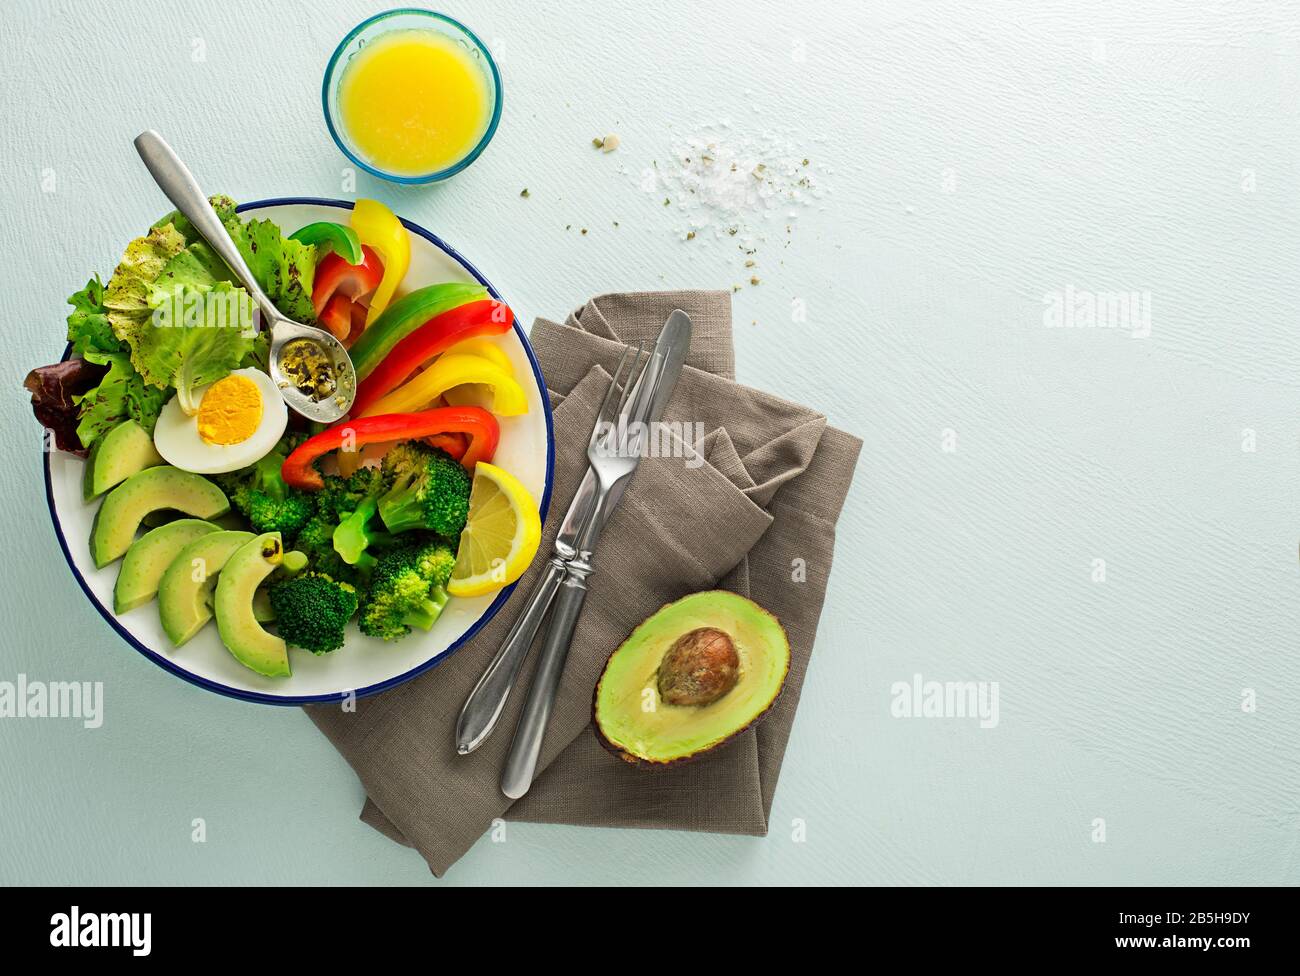 Repas de salade sain avec quinoa, oeuf, avocat et légumes frais mélangés sur fond bleu vue de dessus. Alimentation et santé. Concept de repas sain Banque D'Images